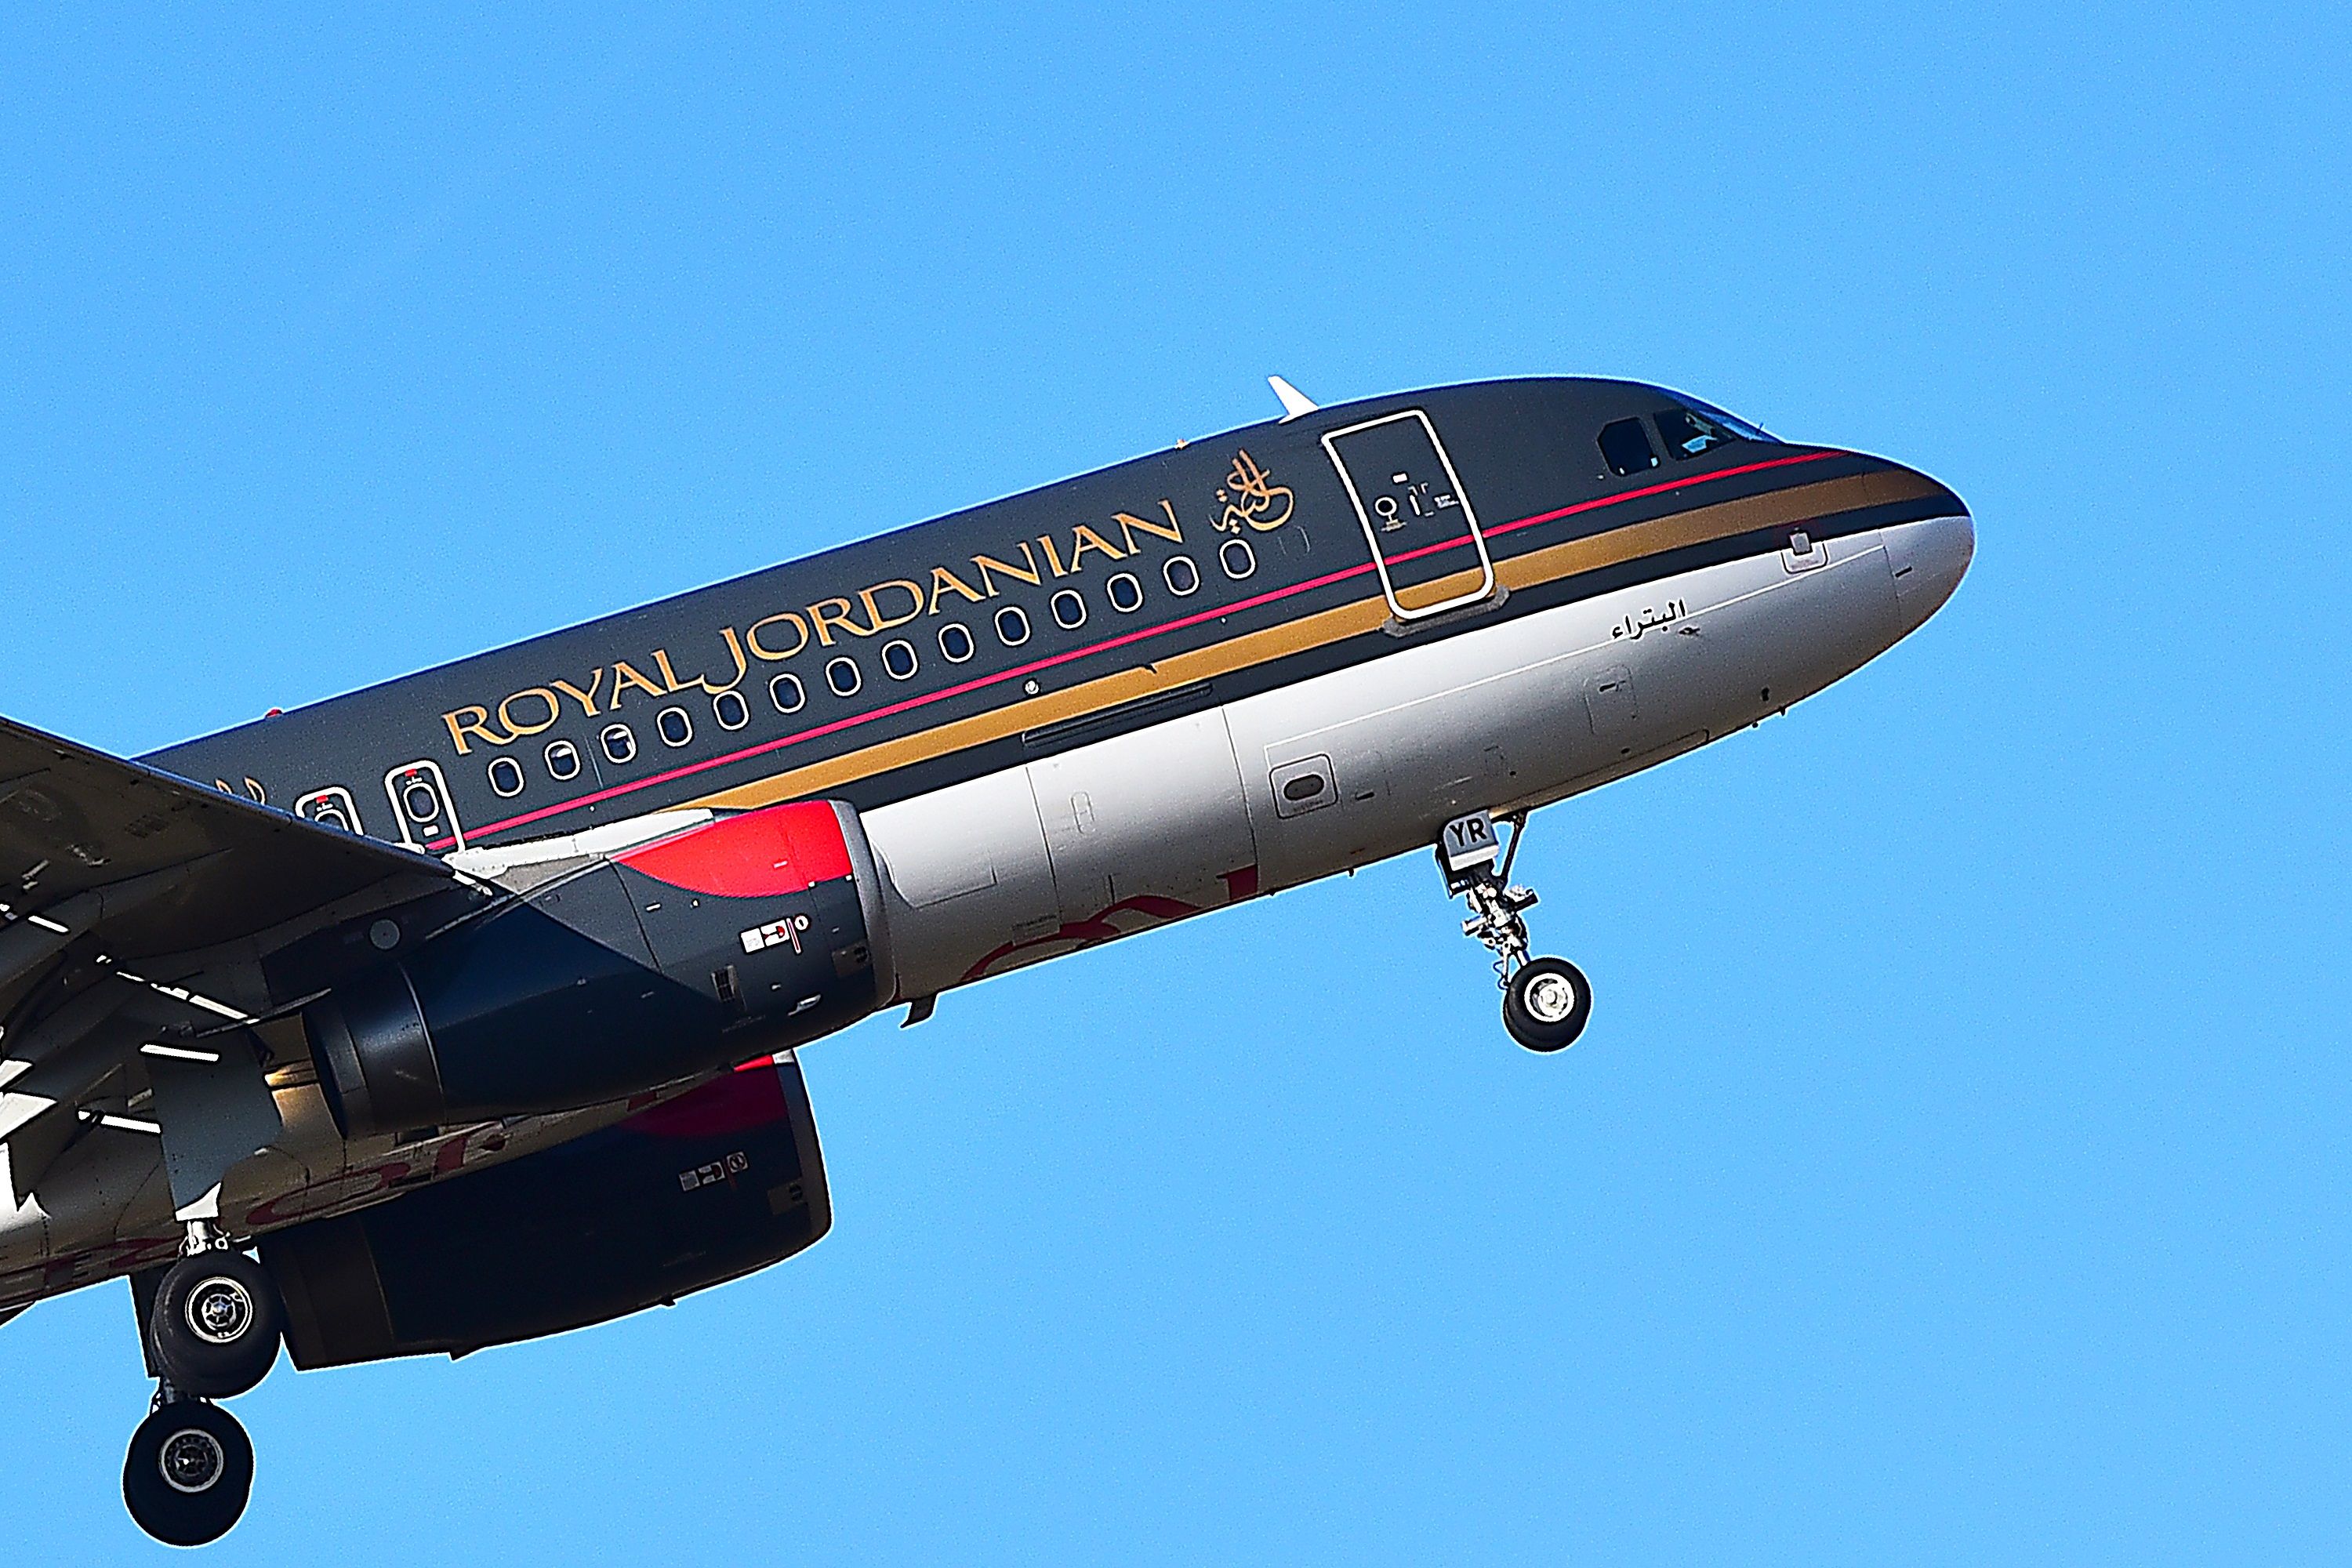 Royal Jordanian taking off